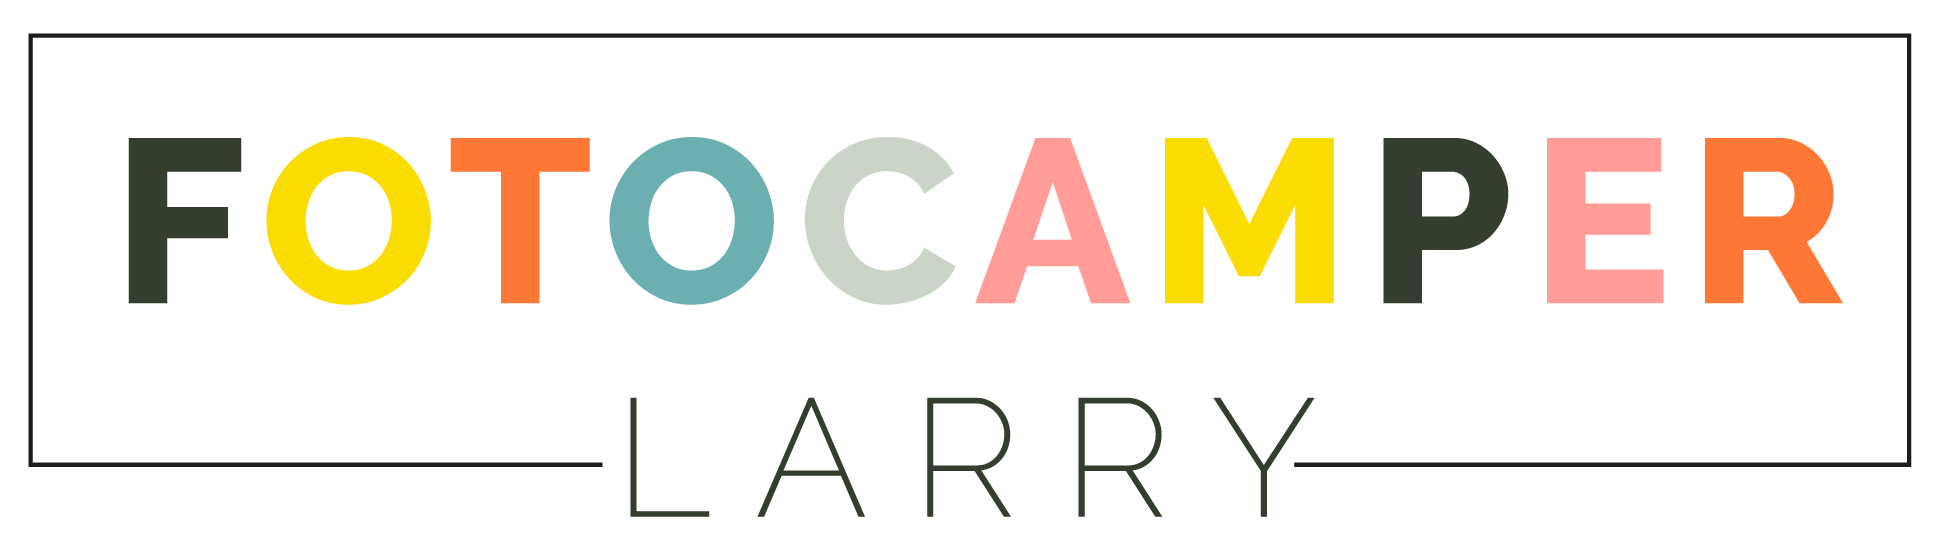 Fotocamper Larry Logo